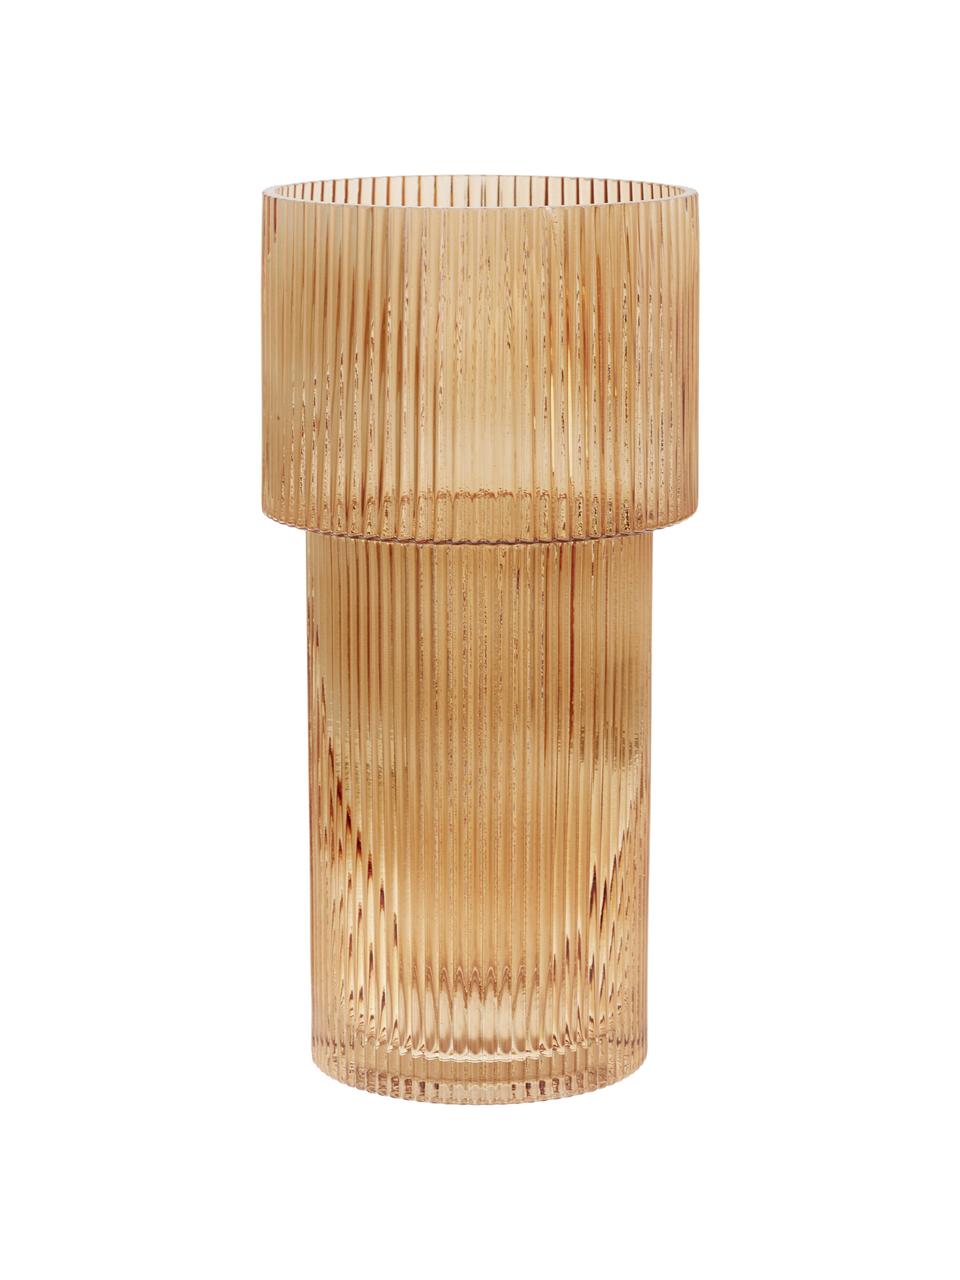 Glas-Vase Lija mit geriffelter Oberfläche in Bernsteinfarben, Glas, Bernsteinfarben, transparent, Ø 14 x H 30 cm